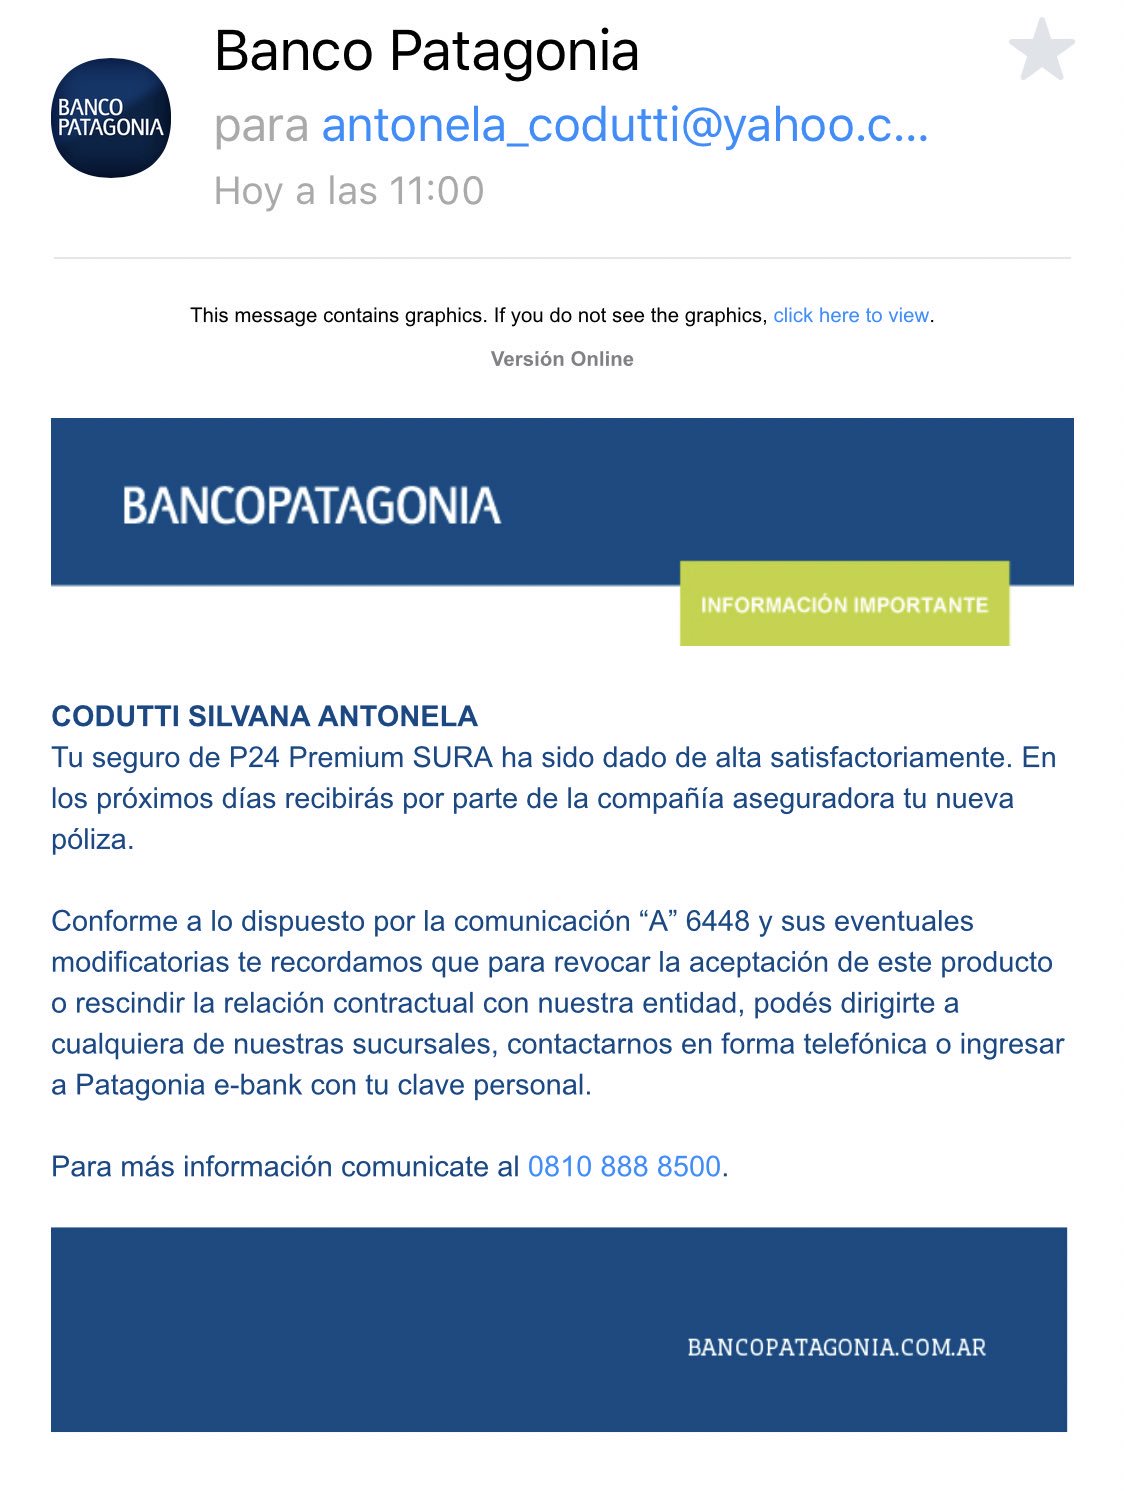 Banco Patagonia on "@antonelacodutti Hola, Antonela. Te pedimos Por favor escribinos en https://t.co/GWCSuaLuM5 detallando la sucursal, el problema que tuviste, tus datos personales y de contacto para reportarlo." /